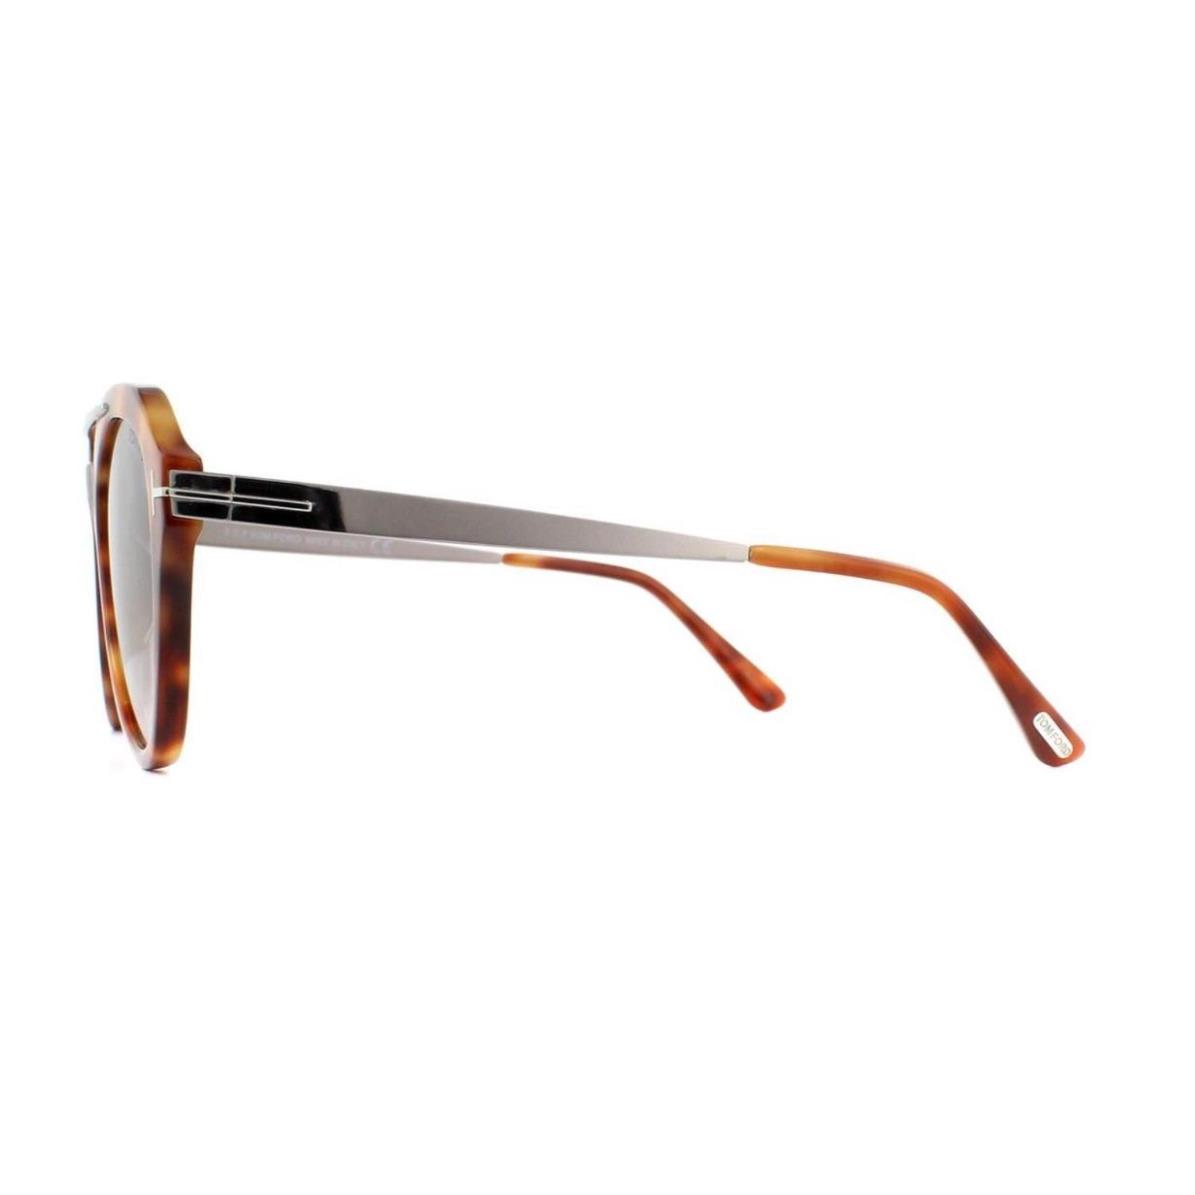 Tom Ford sunglasses  - Blonde Havana Frame, Gray Lens